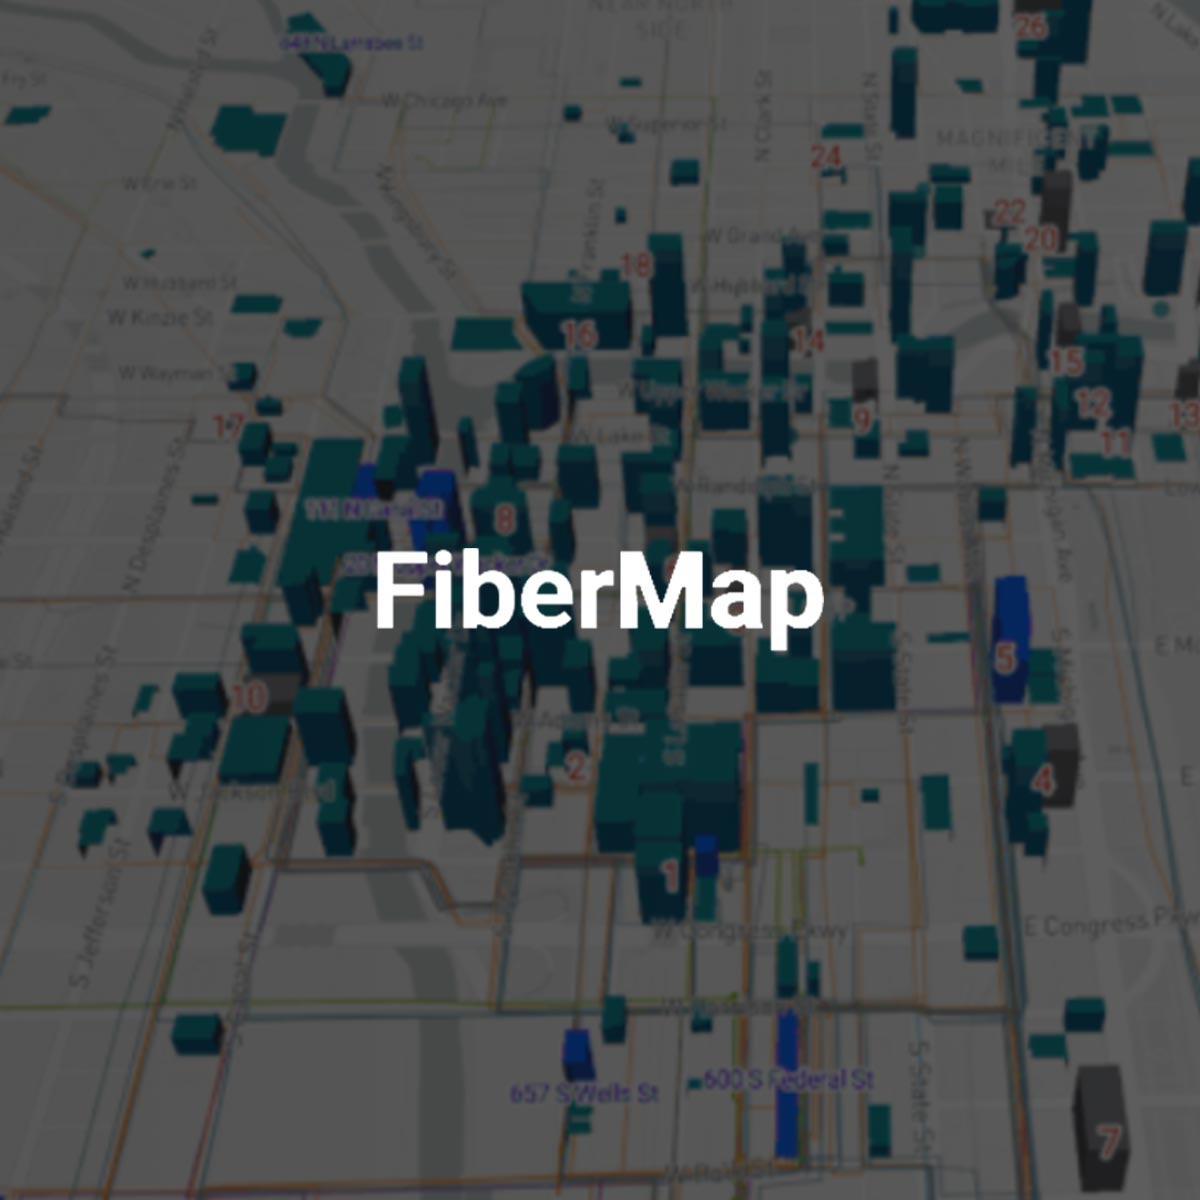 FiberMap: Web Design for a Startup